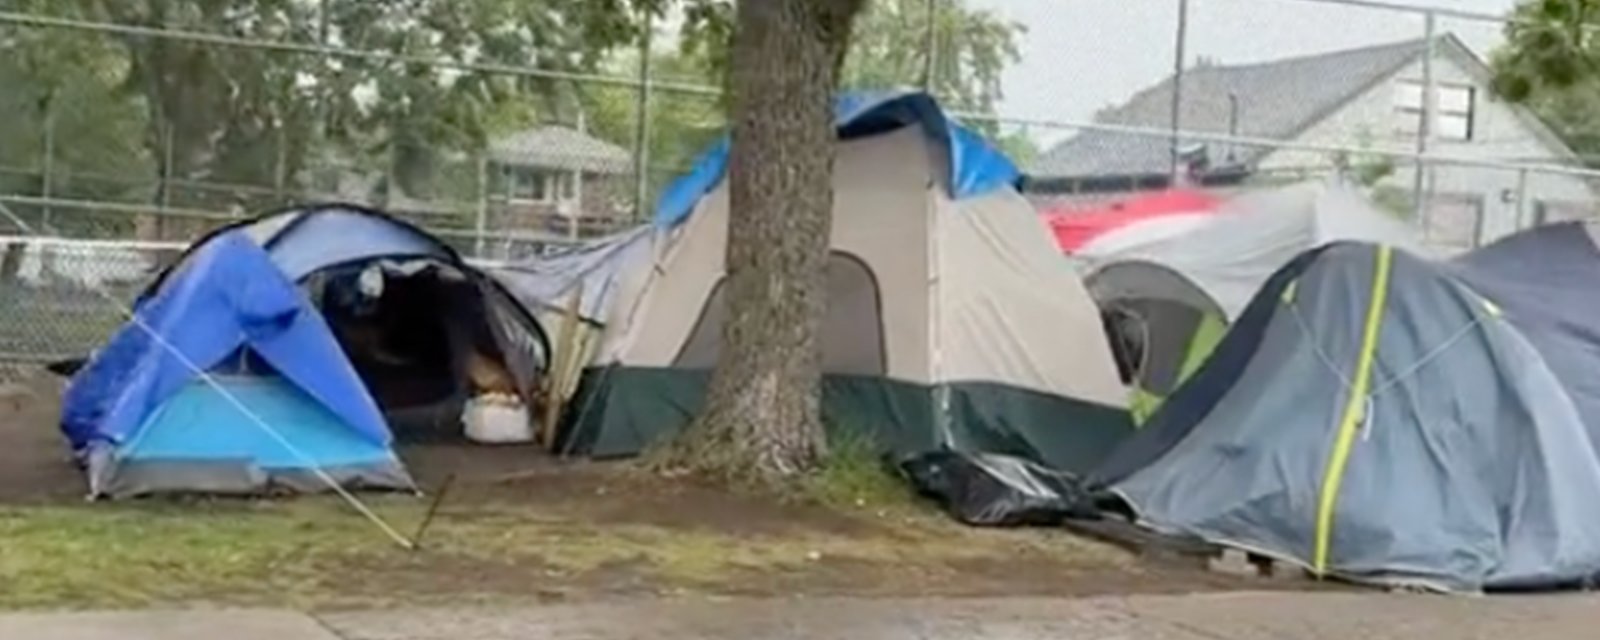 Une vidéo troublante montre de nombreuses tentes dans une rue de Longueuil